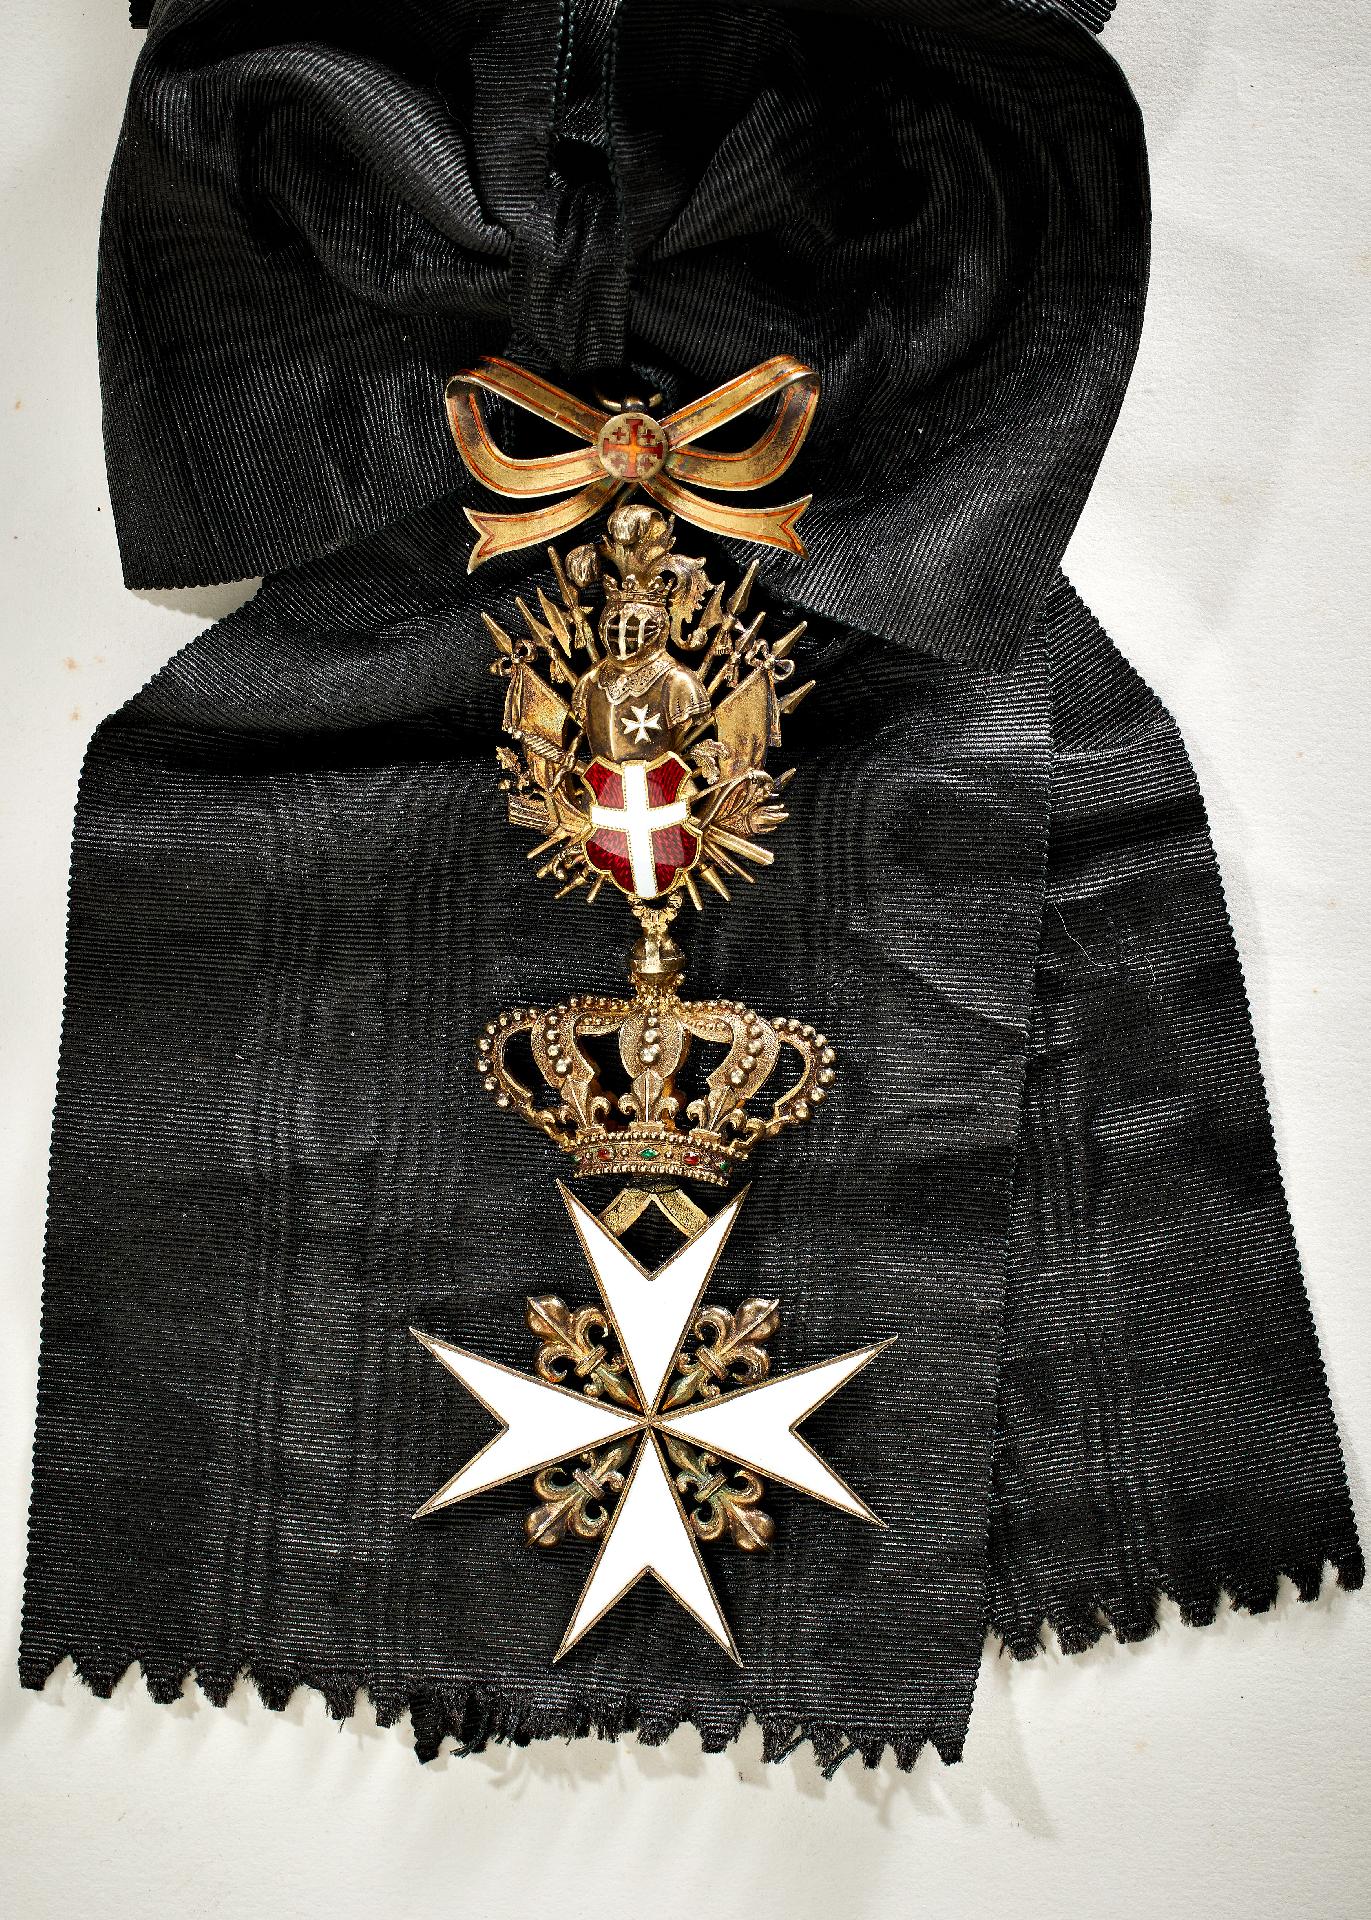 Souveräner Malteser Ritterorden : Malteser Orden: Großkreuz der Justiz-, Ehren- und Devotionsbai... - Image 2 of 3